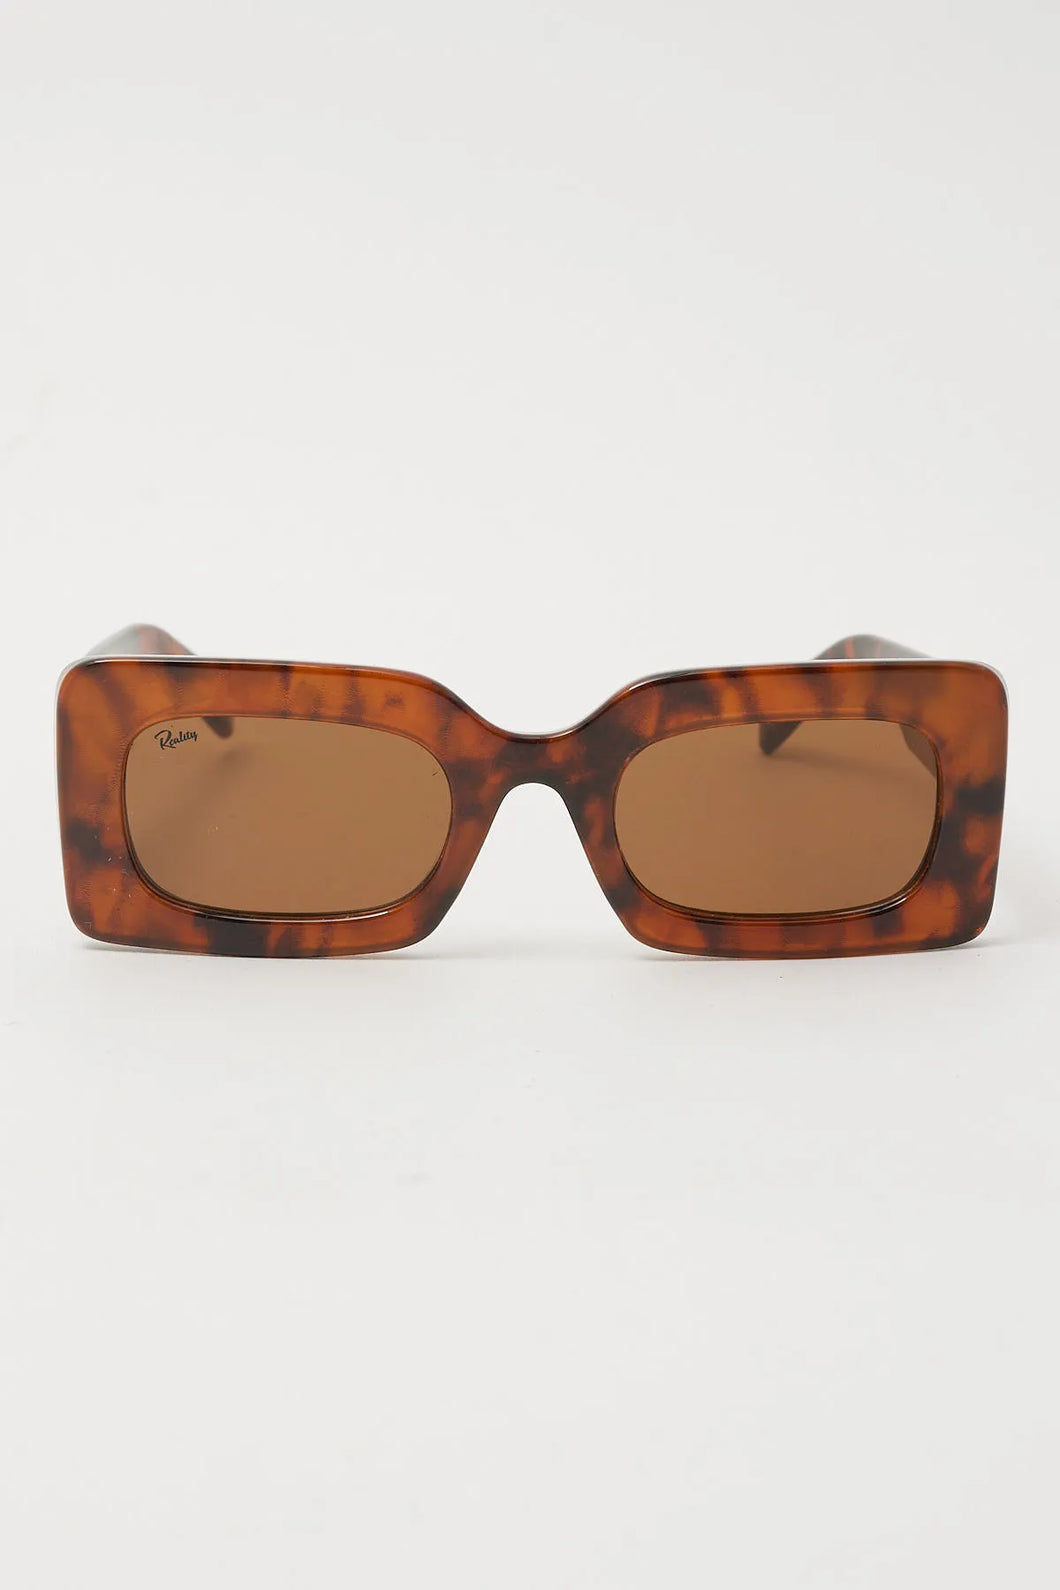 Reality Eyewear | Twiggy | Chocolate Turtle